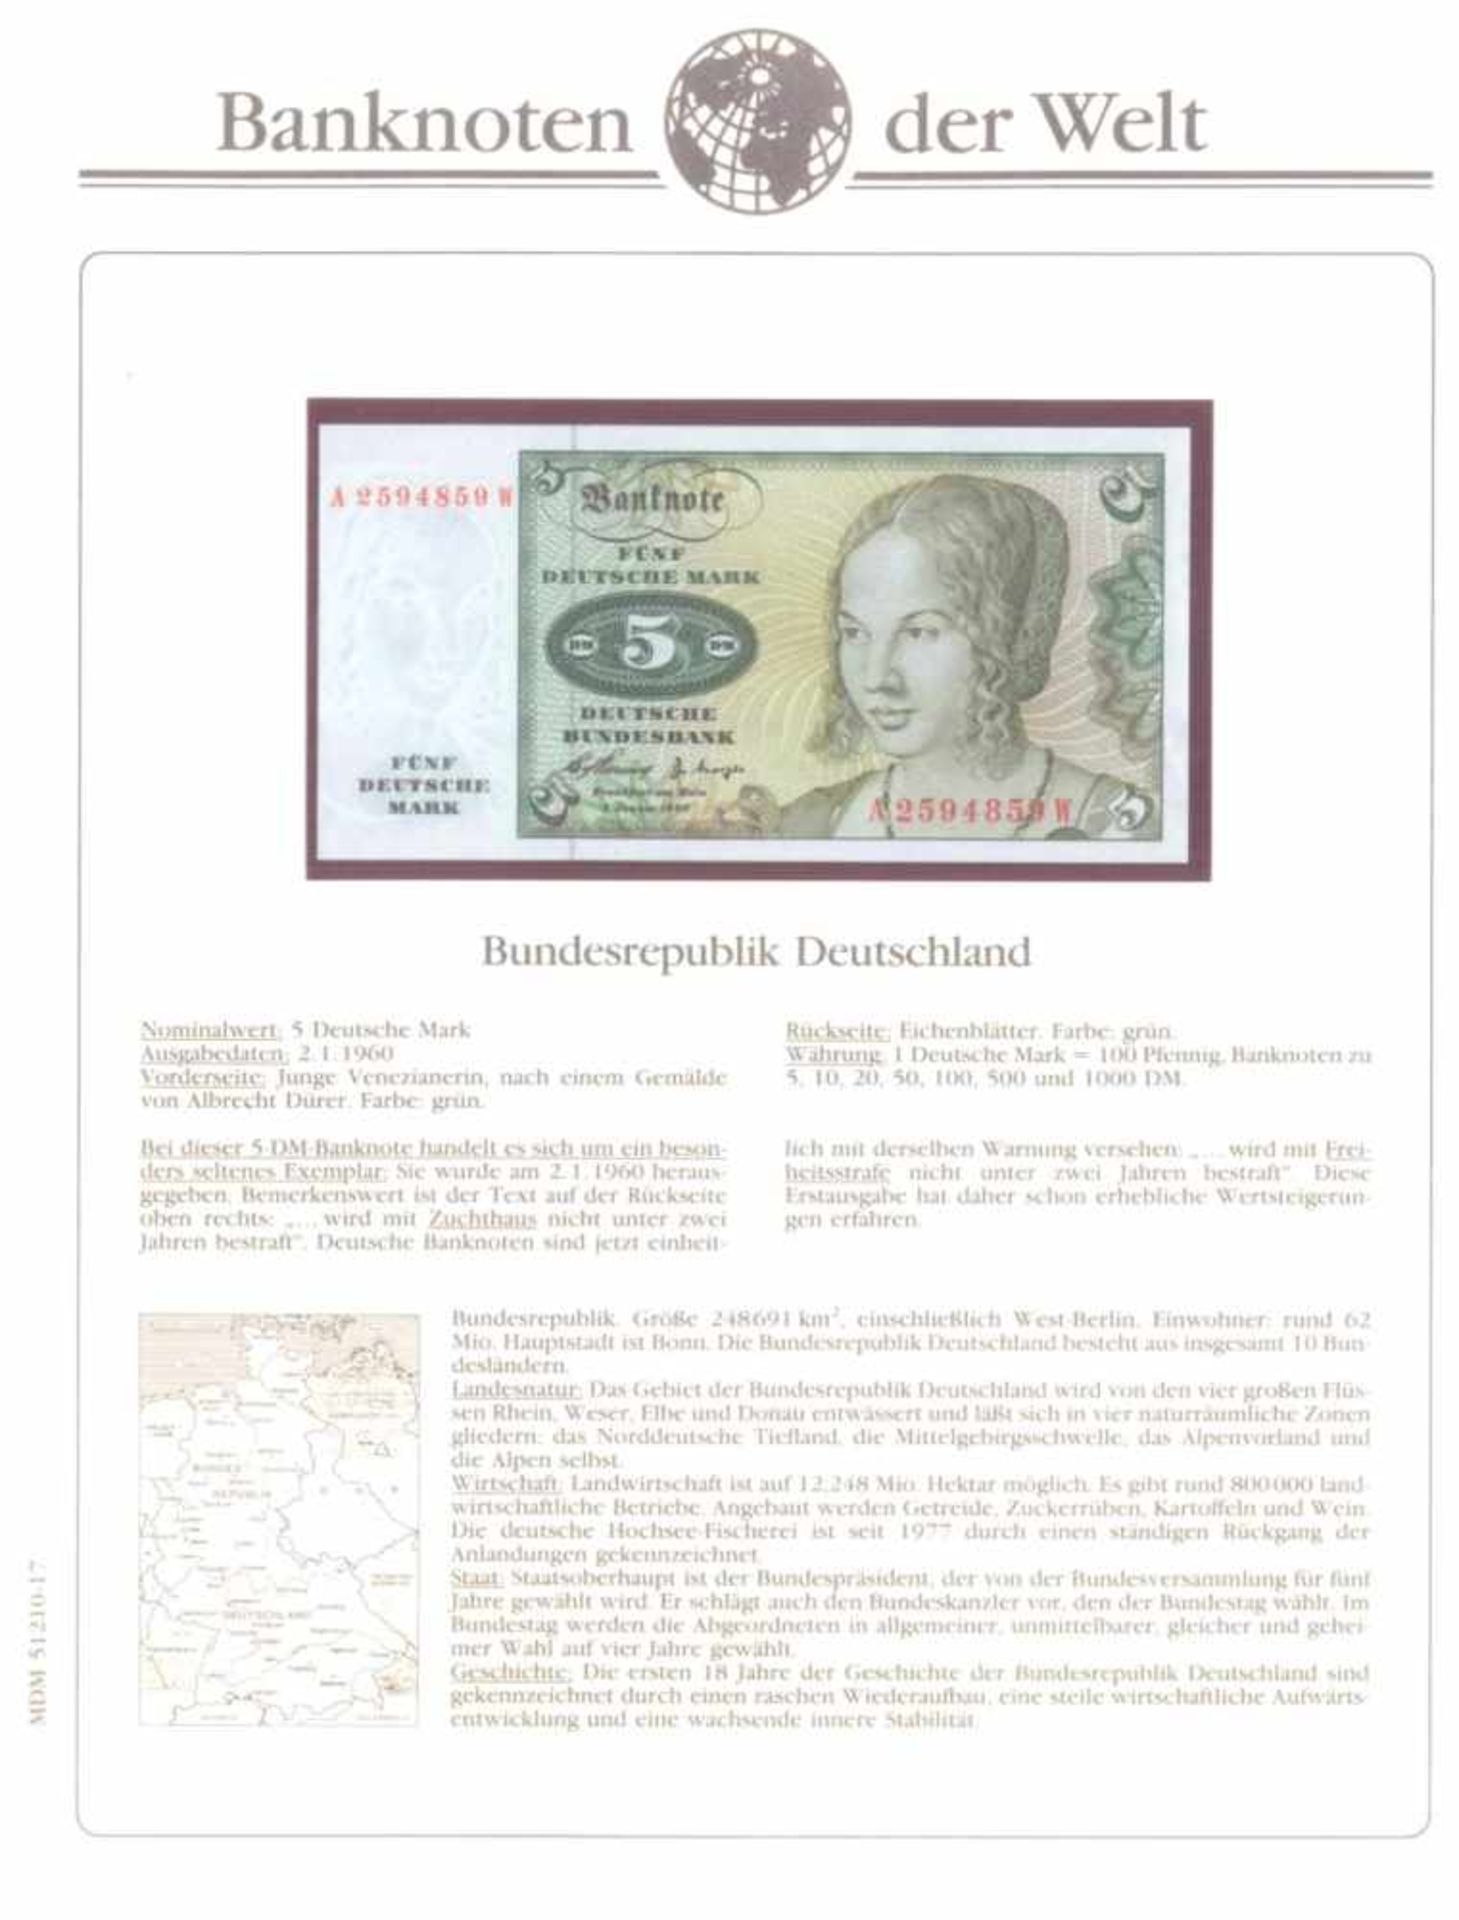 Banknoten der WeltBorek-Abo-Bezug. 2 Alben, prall gefüllt mit weit über100 Geldscheinen nebst - Bild 2 aus 4